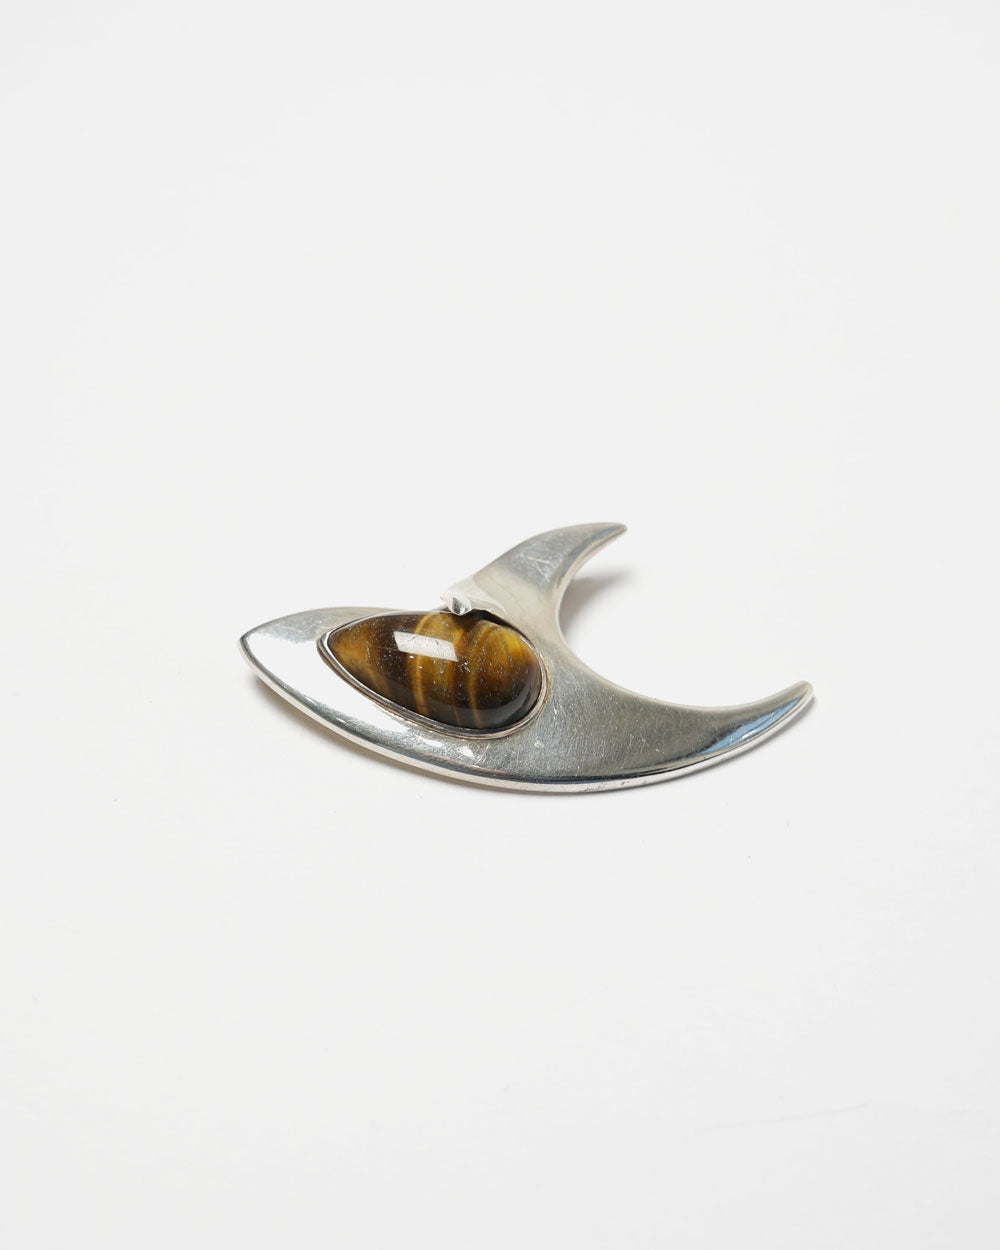 Silver Brooch / Pin w/ Tiger Eye